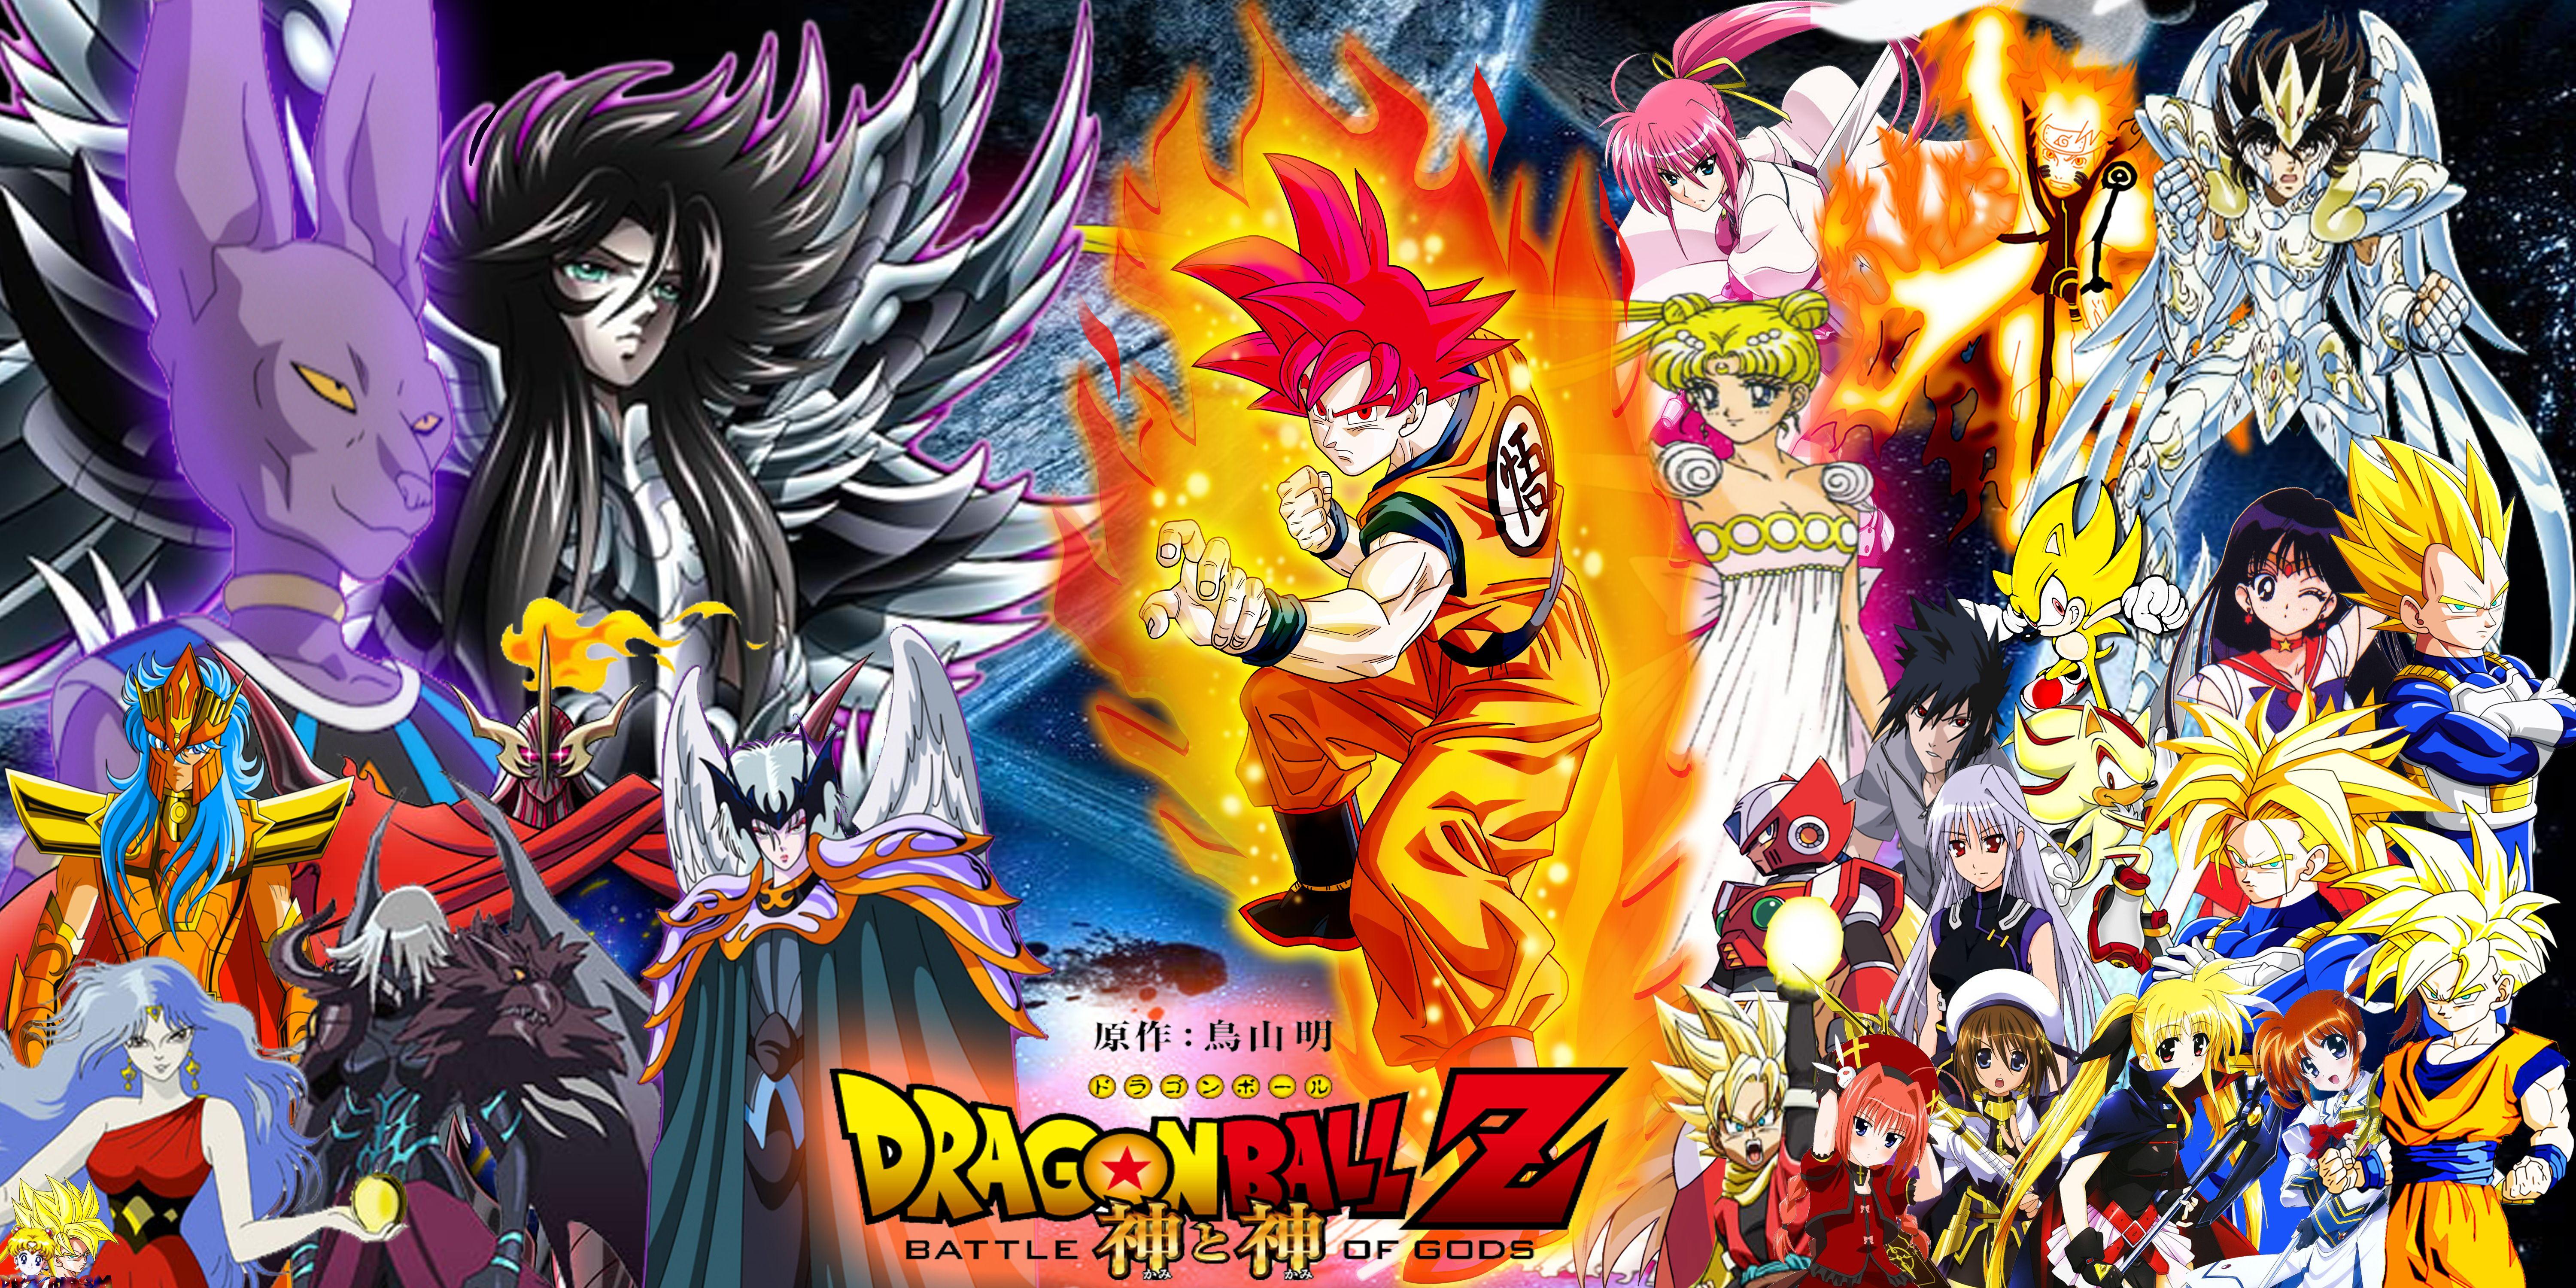 Dragon Ball Z. Wallpaper HD free Download. Dragon Ball Z